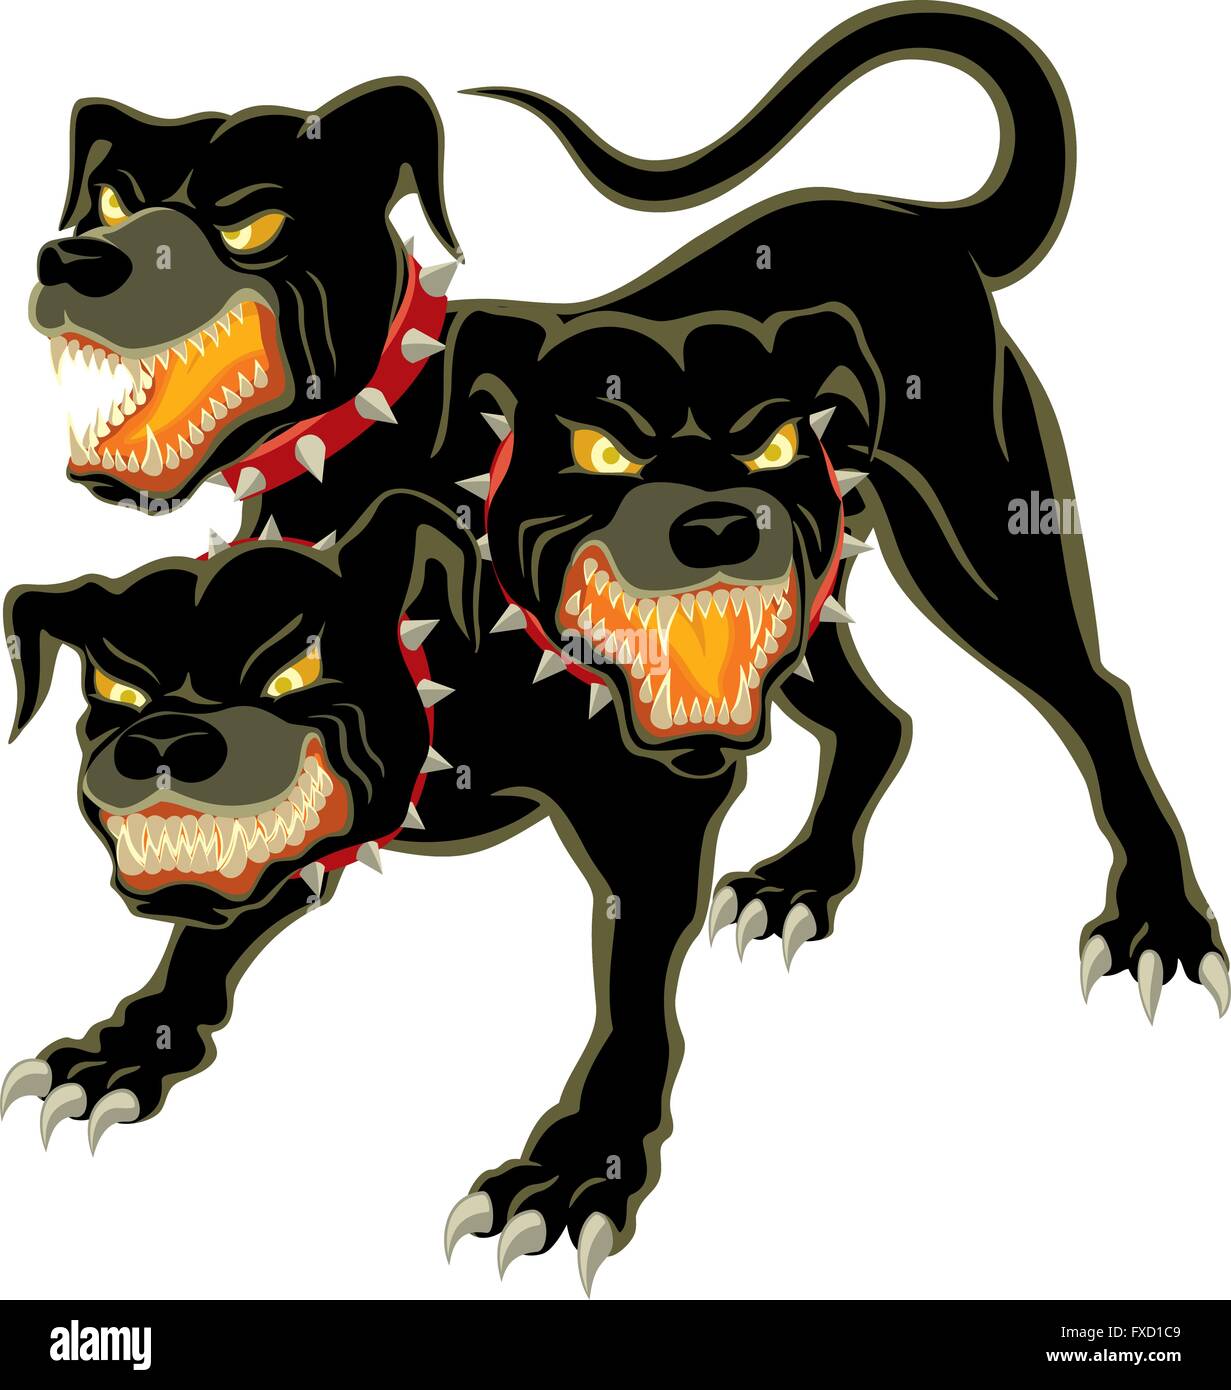 Le tre teste di cane - Cerberus Immagine e Vettoriale - Alamy